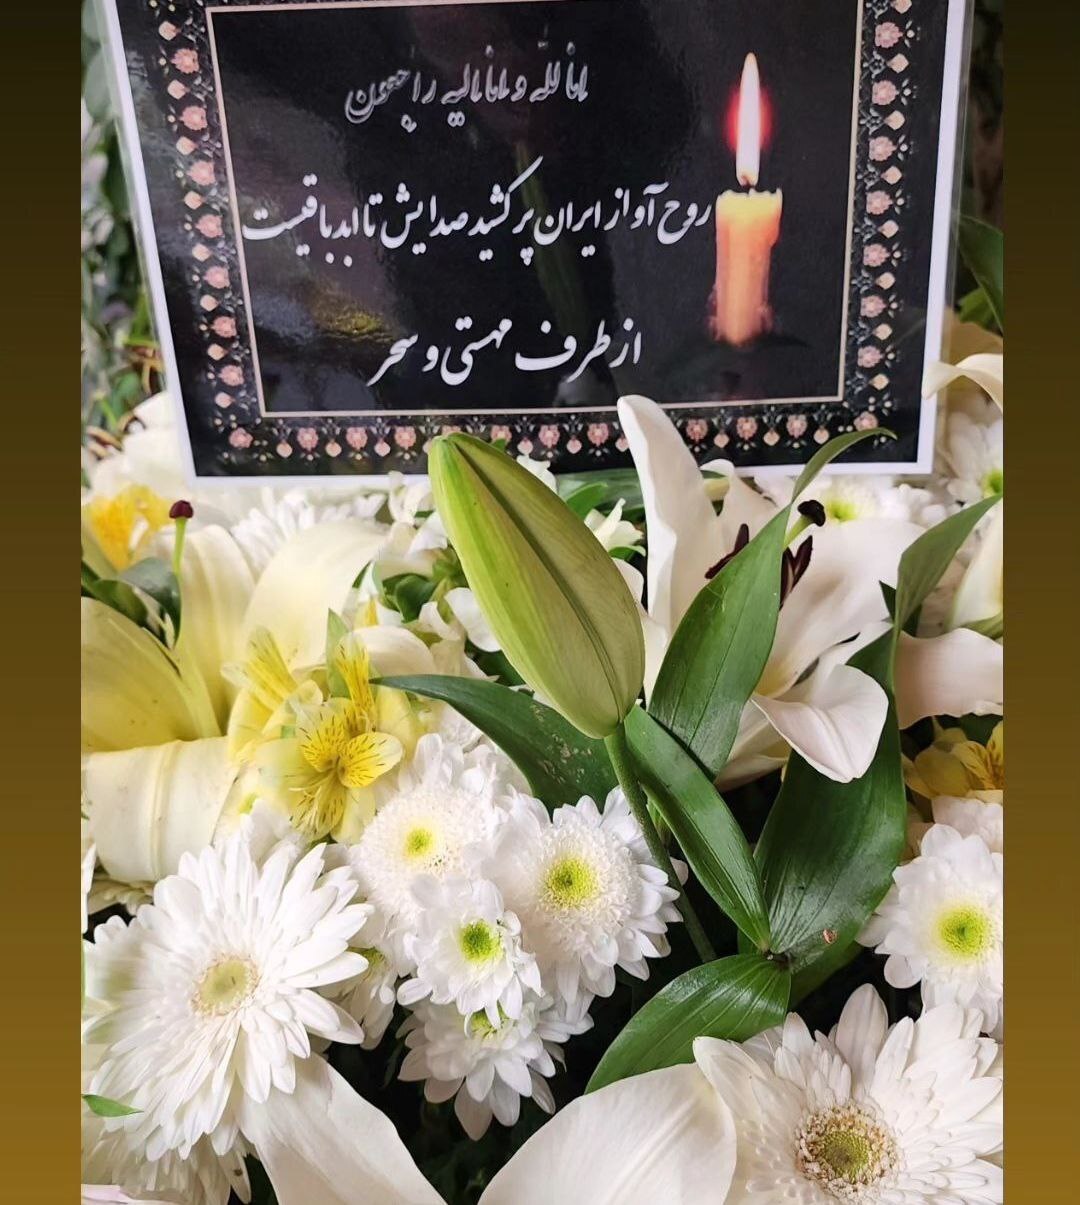 دسته گل های خانواده مهستی و هایده برای زنده یاد اکبر گلپا